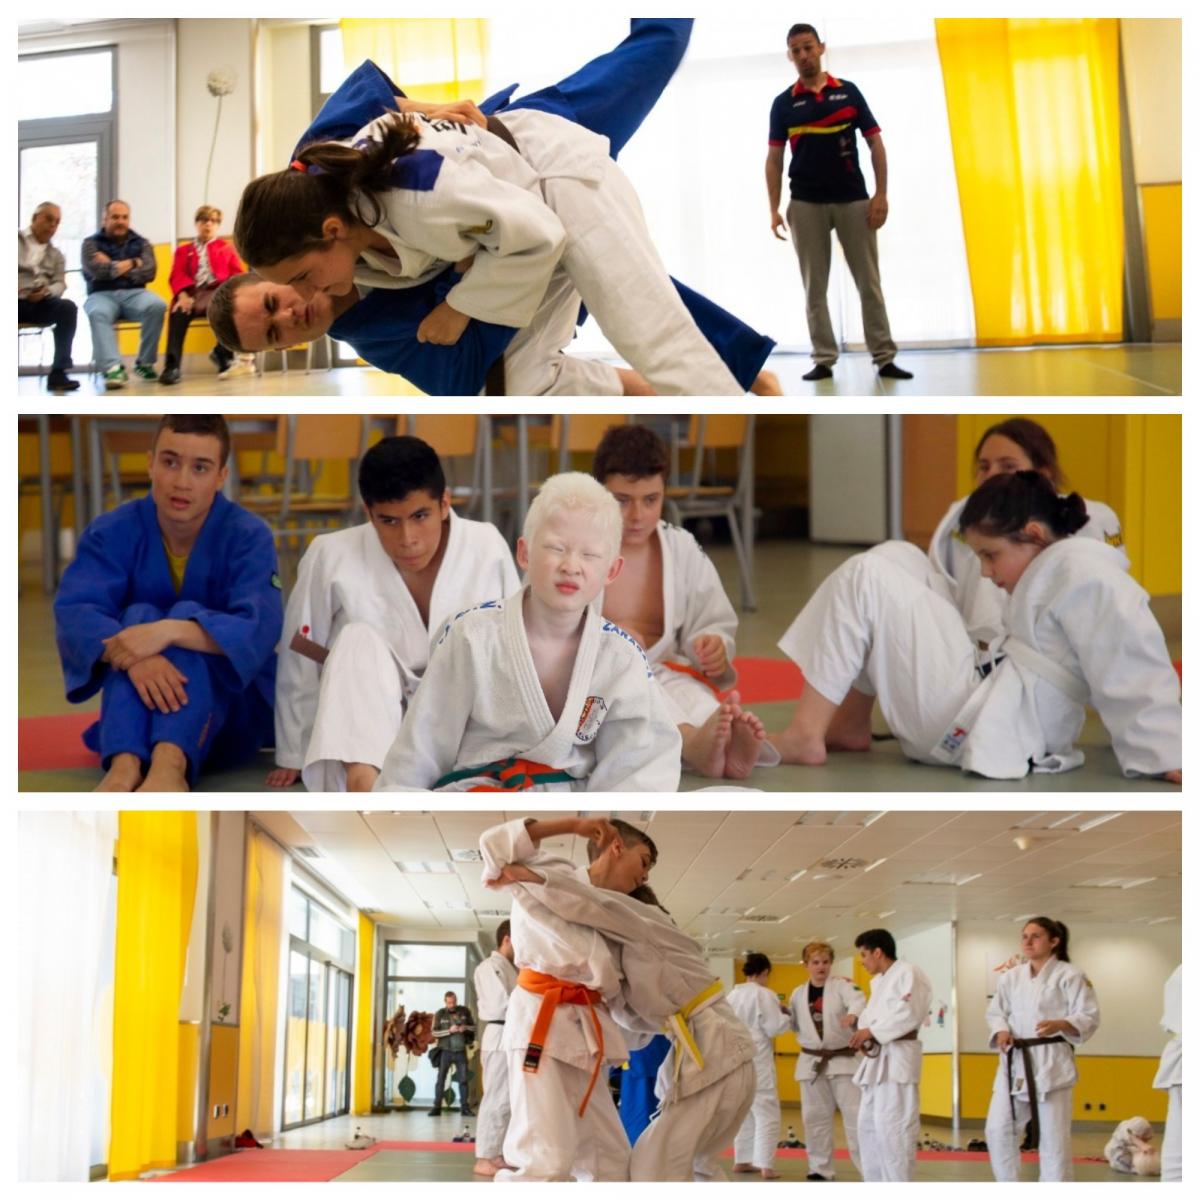 Collage con varios momentos de la competición de judo